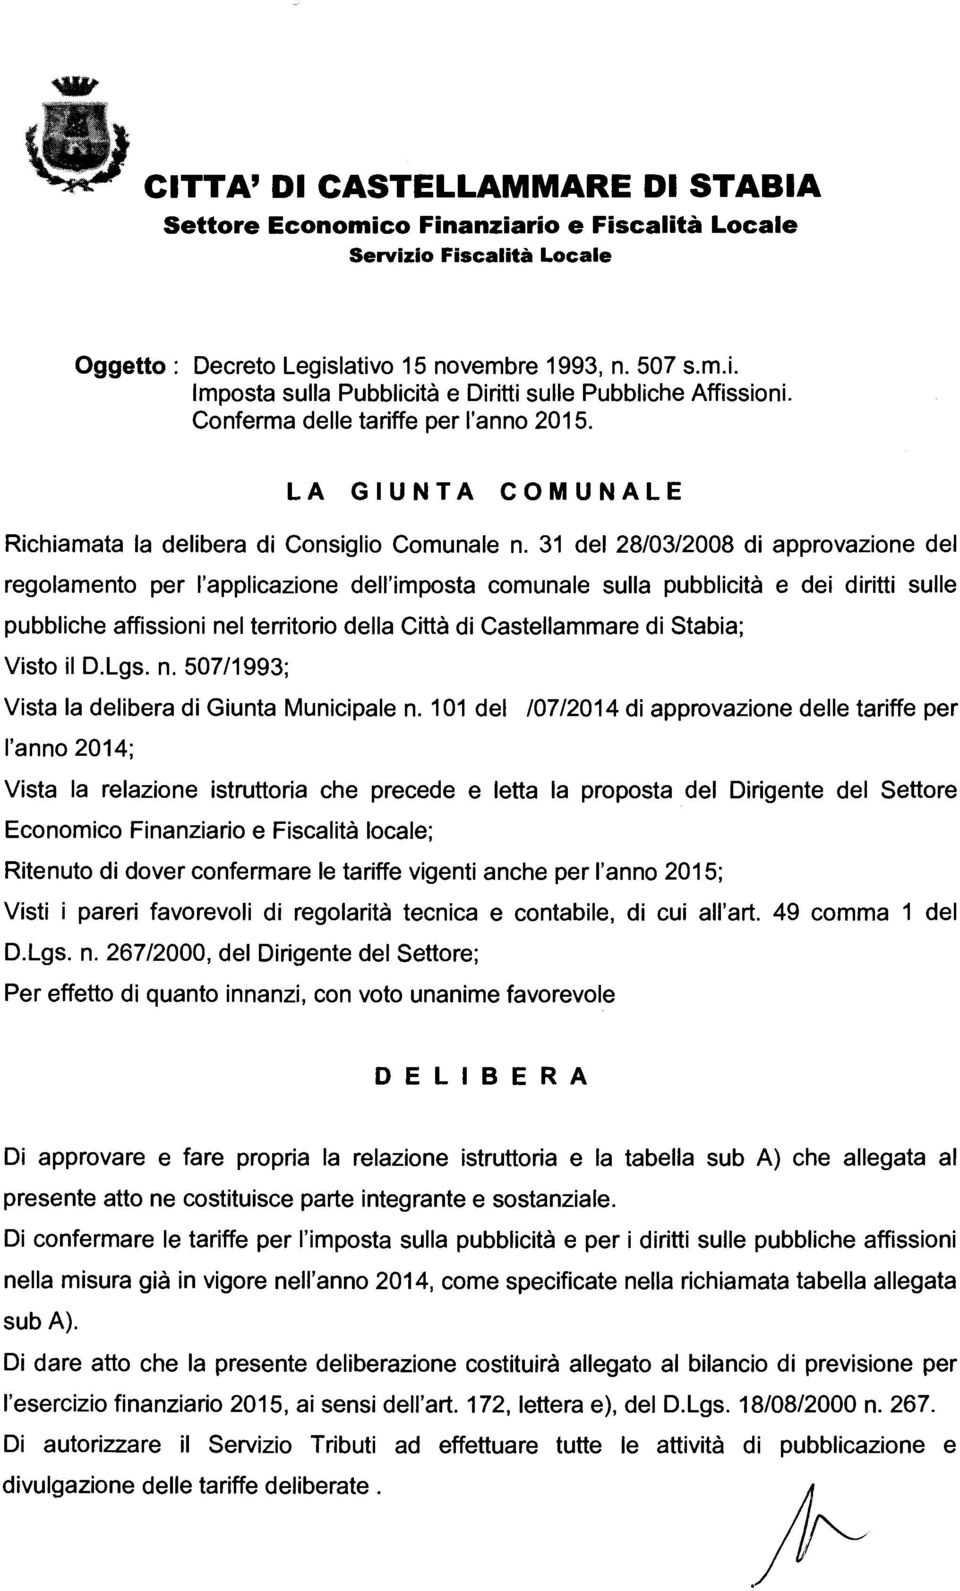 31 del 28/03/2008 di approvazione del regolamento per l'applicazione dell'imposta comunale sulla pubblicità e dei diritti sulle pubbliche affissioni nel territorio della Città di Castellammare di